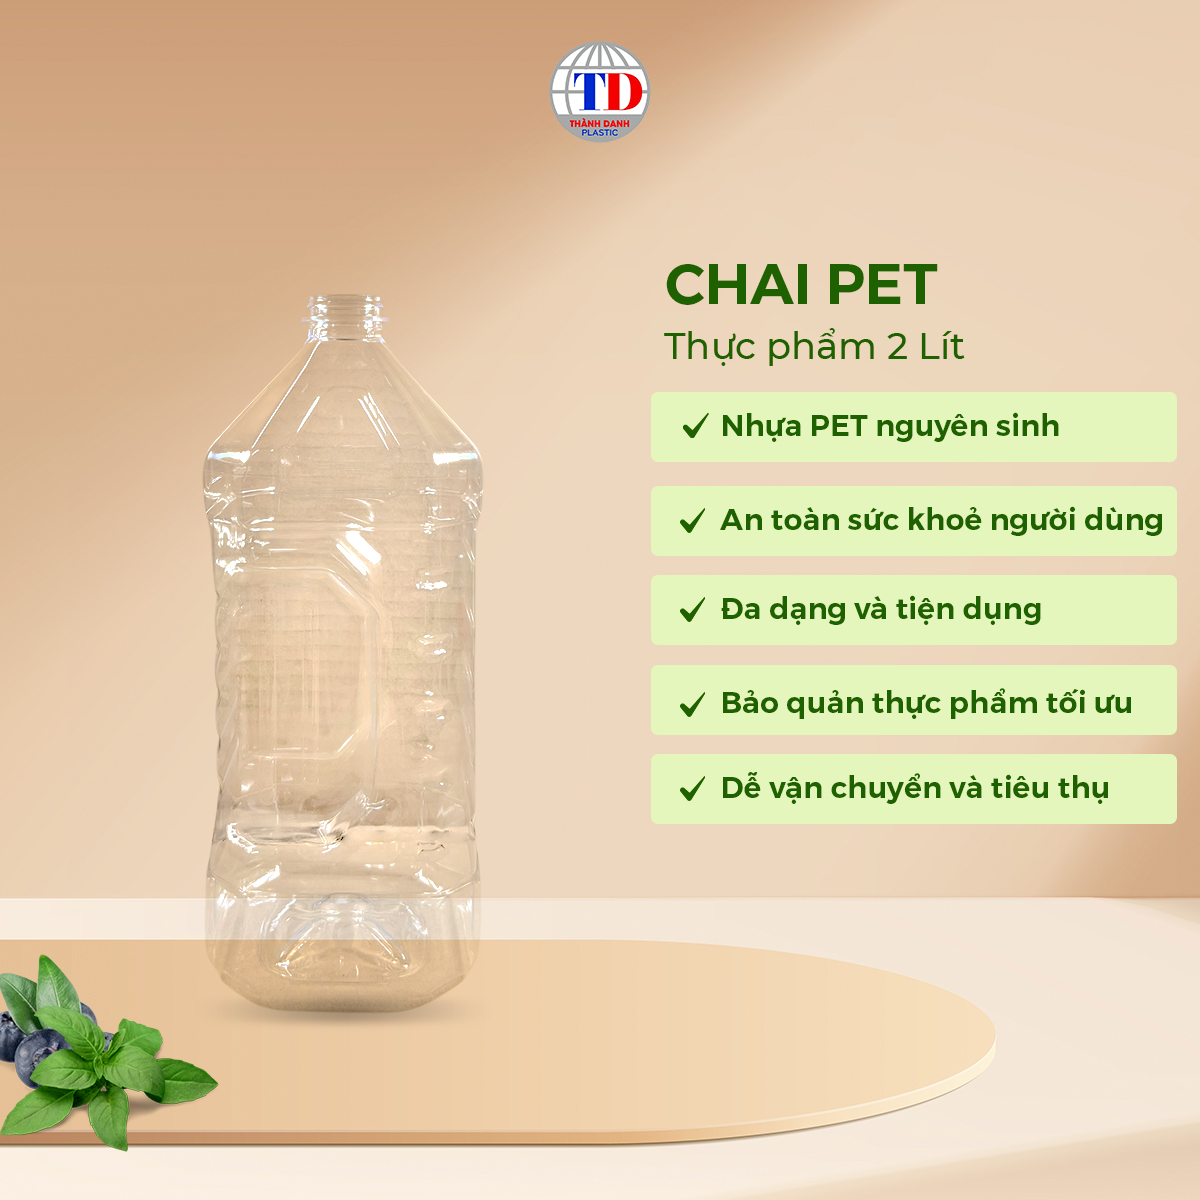 Chai PET 2 Lit